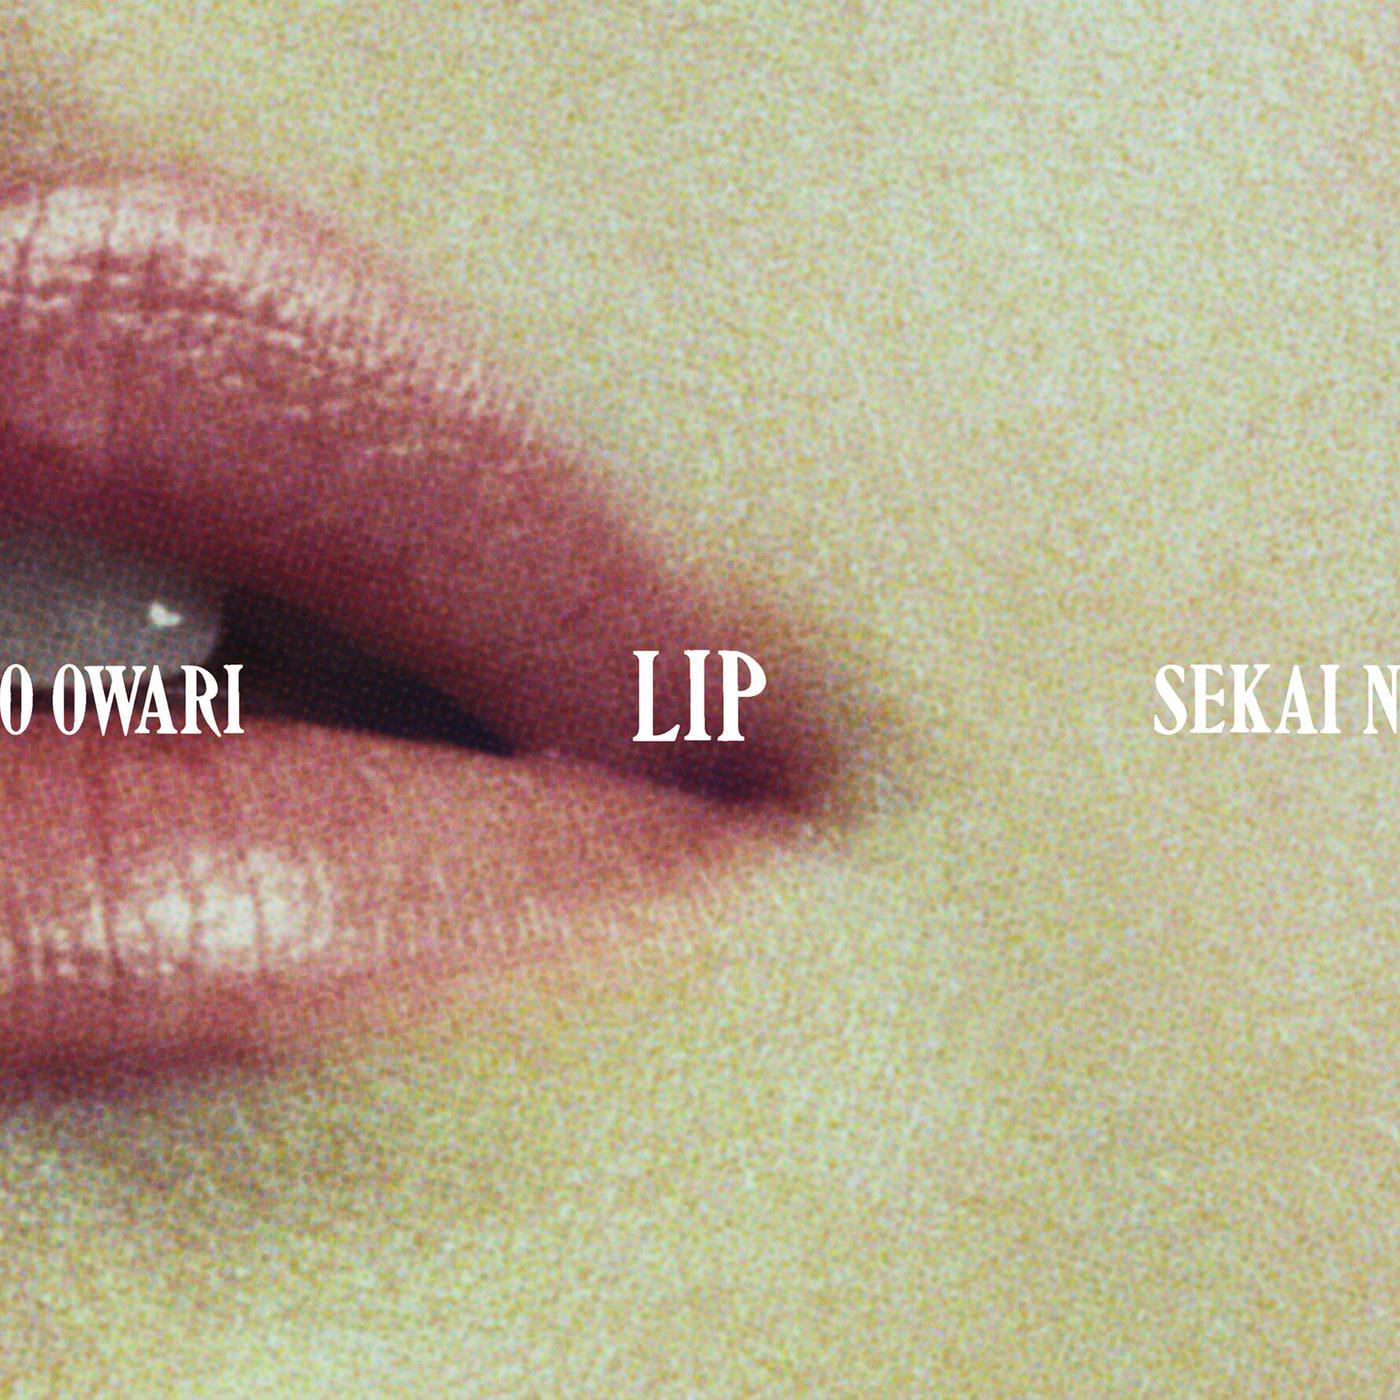 向日葵歌词 歌手Sekai no Owari-专辑Lip-单曲《向日葵》LRC歌词下载